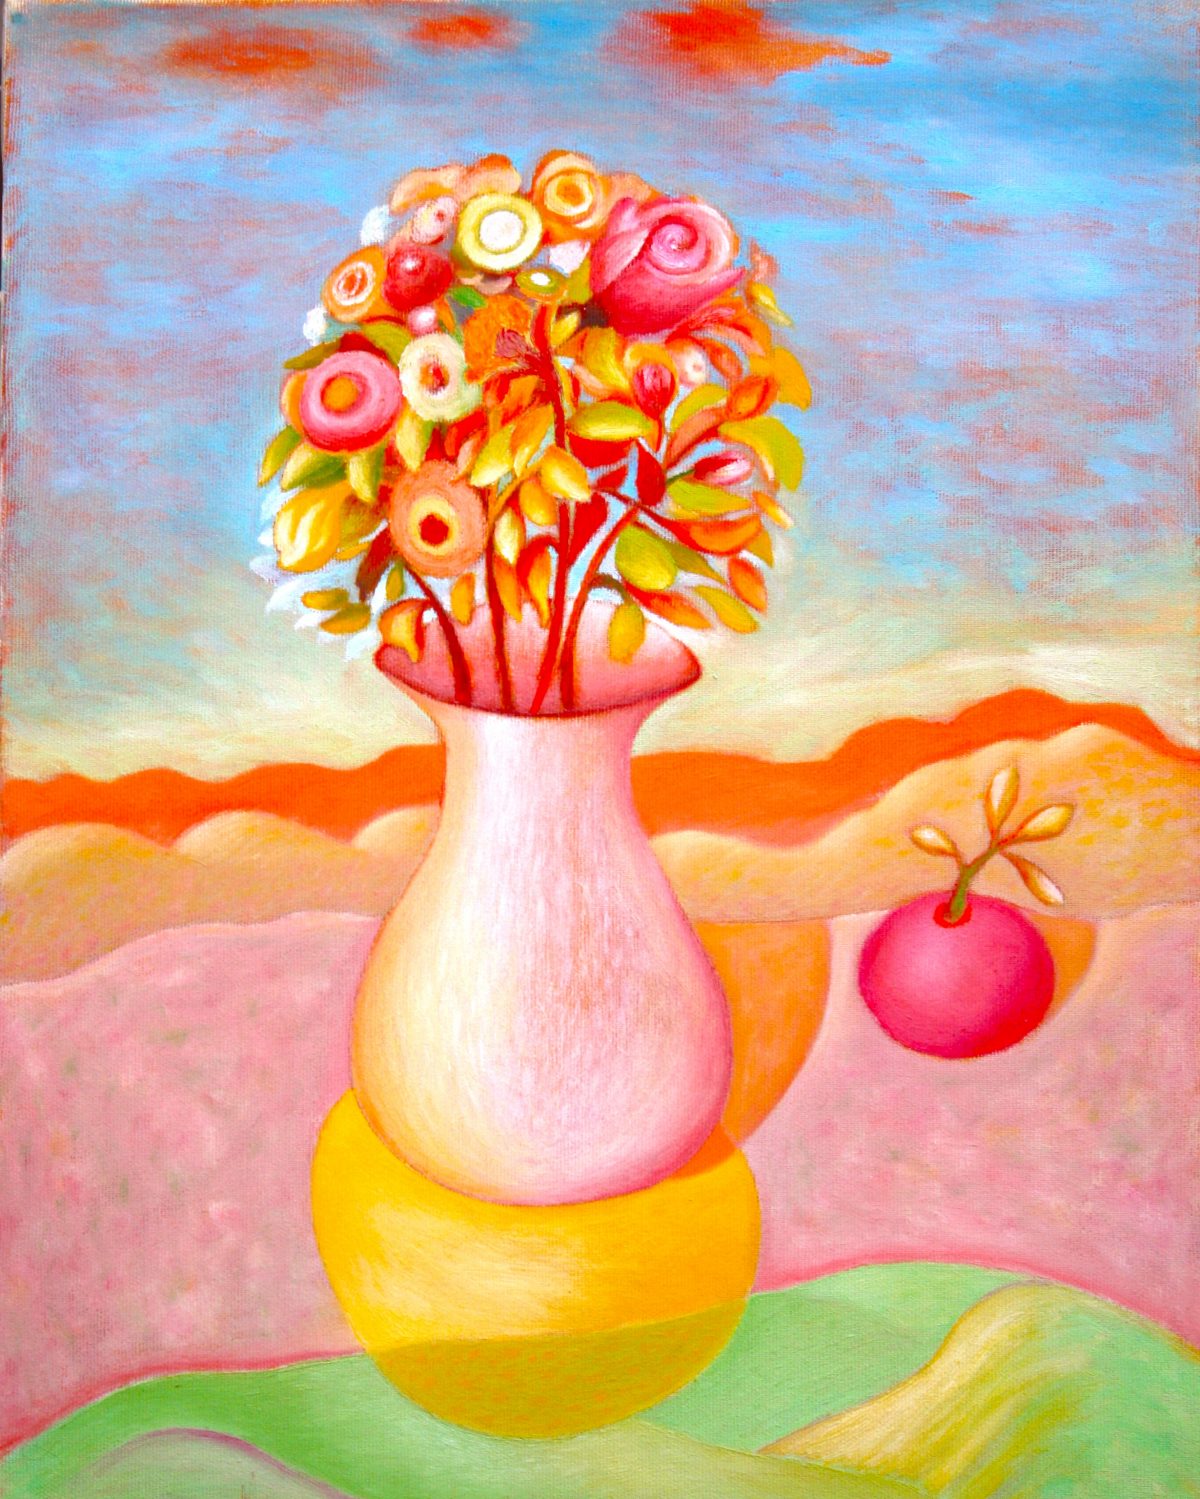 Vaso con fiori e arancia, 2006
Olio su tela,
50 x 40 cm,
NMV302